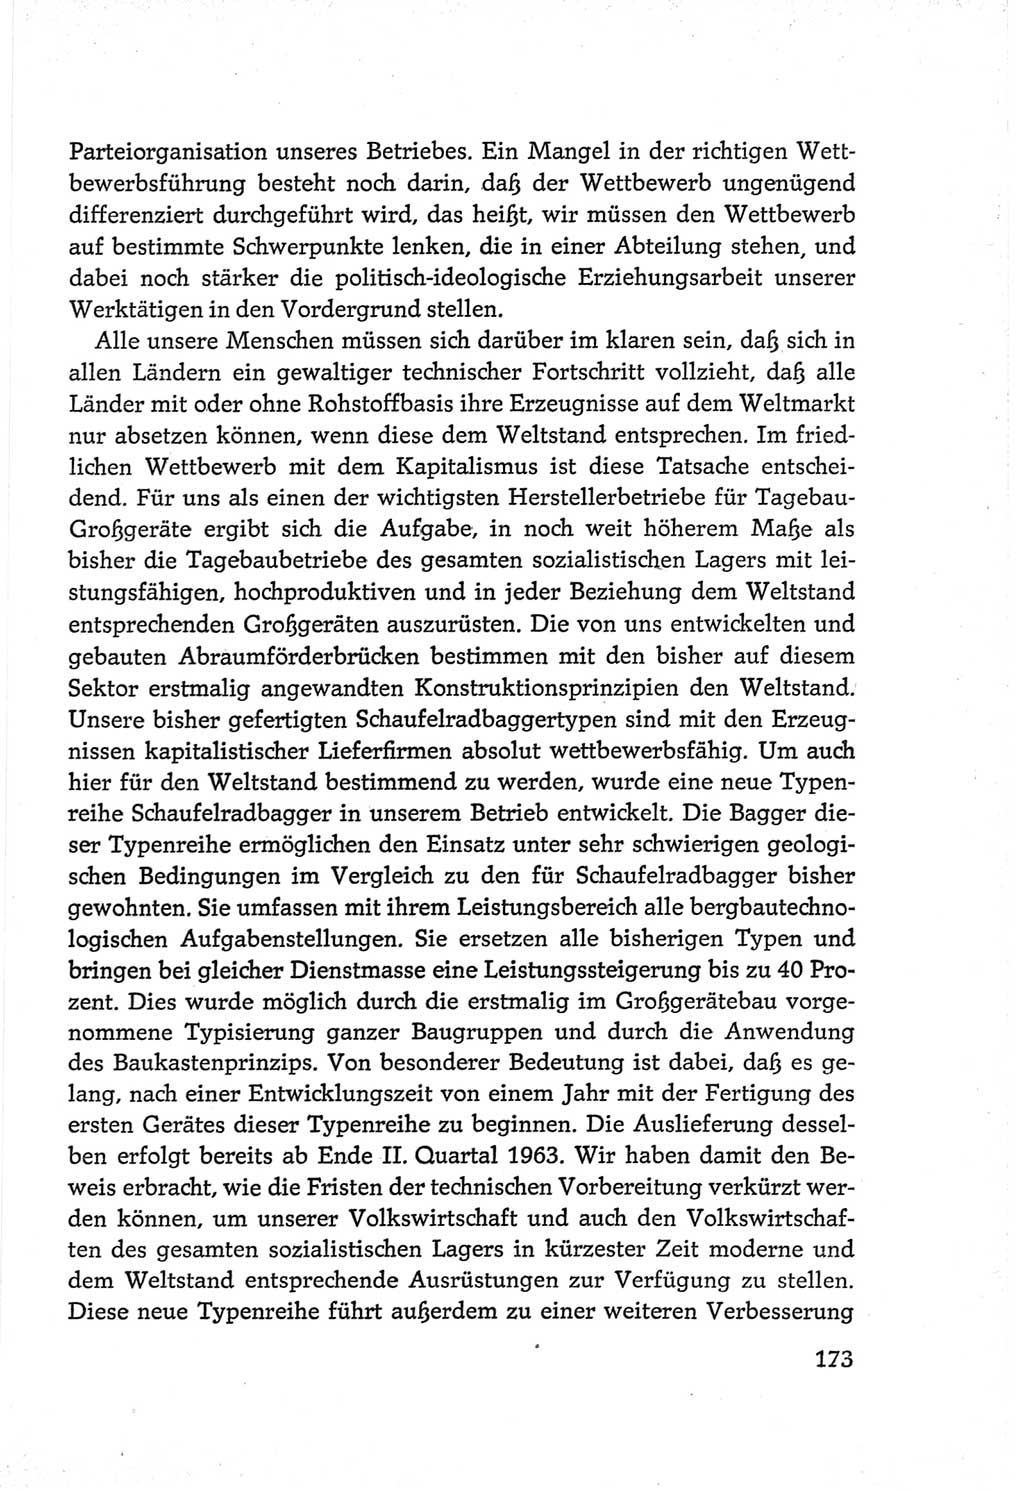 Protokoll der Verhandlungen des Ⅵ. Parteitages der Sozialistischen Einheitspartei Deutschlands (SED) [Deutsche Demokratische Republik (DDR)] 1963, Band Ⅲ, Seite 173 (Prot. Verh. Ⅵ. PT SED DDR 1963, Bd. Ⅲ, S. 173)